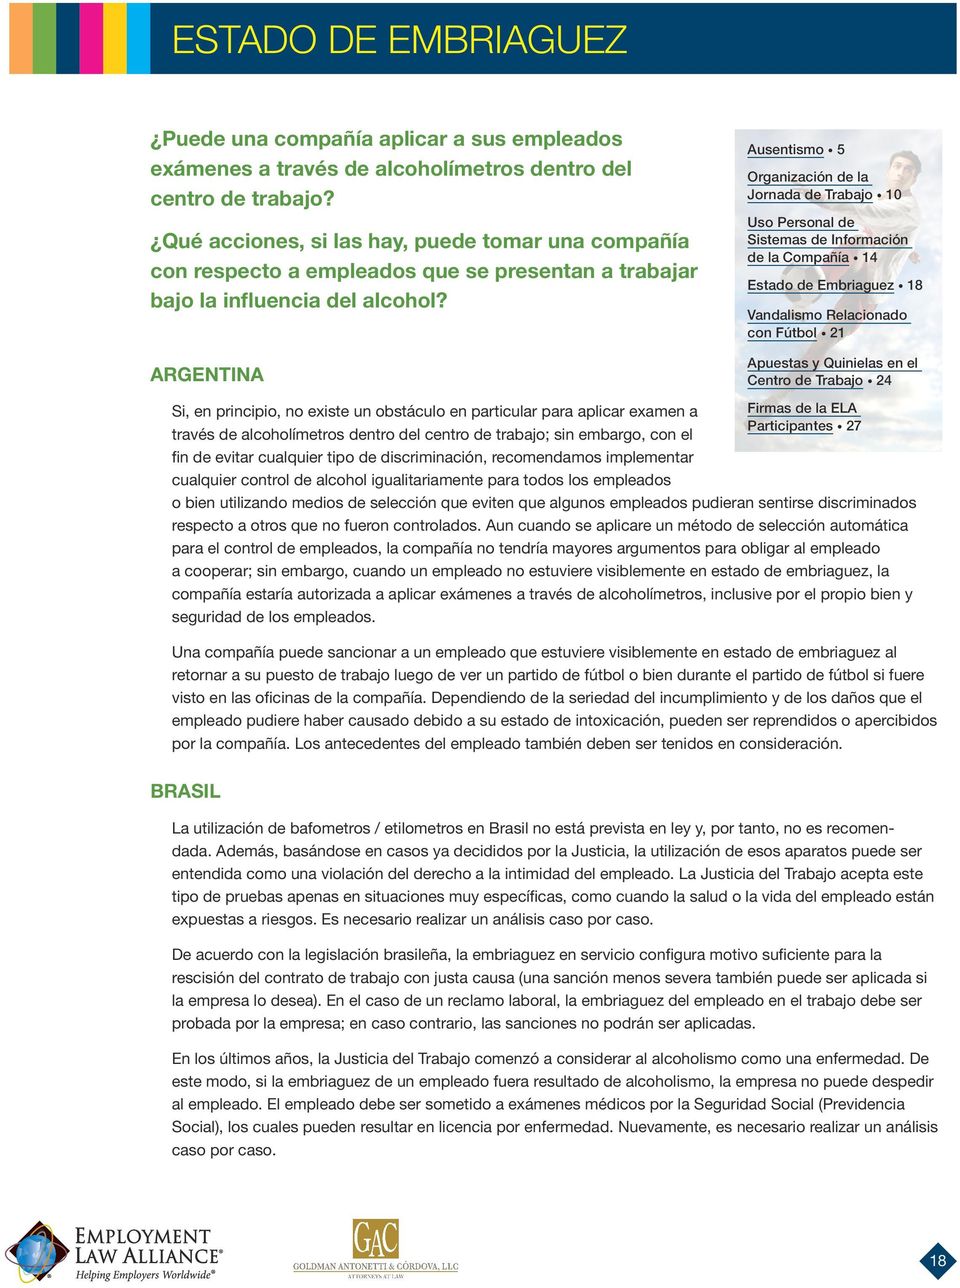 ARGENTINA Ausentismo 5 Organización de la Jornada de Trabajo 10 Uso Personal de Sistemas de Información de la Compañía 14 Estado de Embriaguez 18 Vandalismo Relacionado con Fútbol 21 Apuestas y